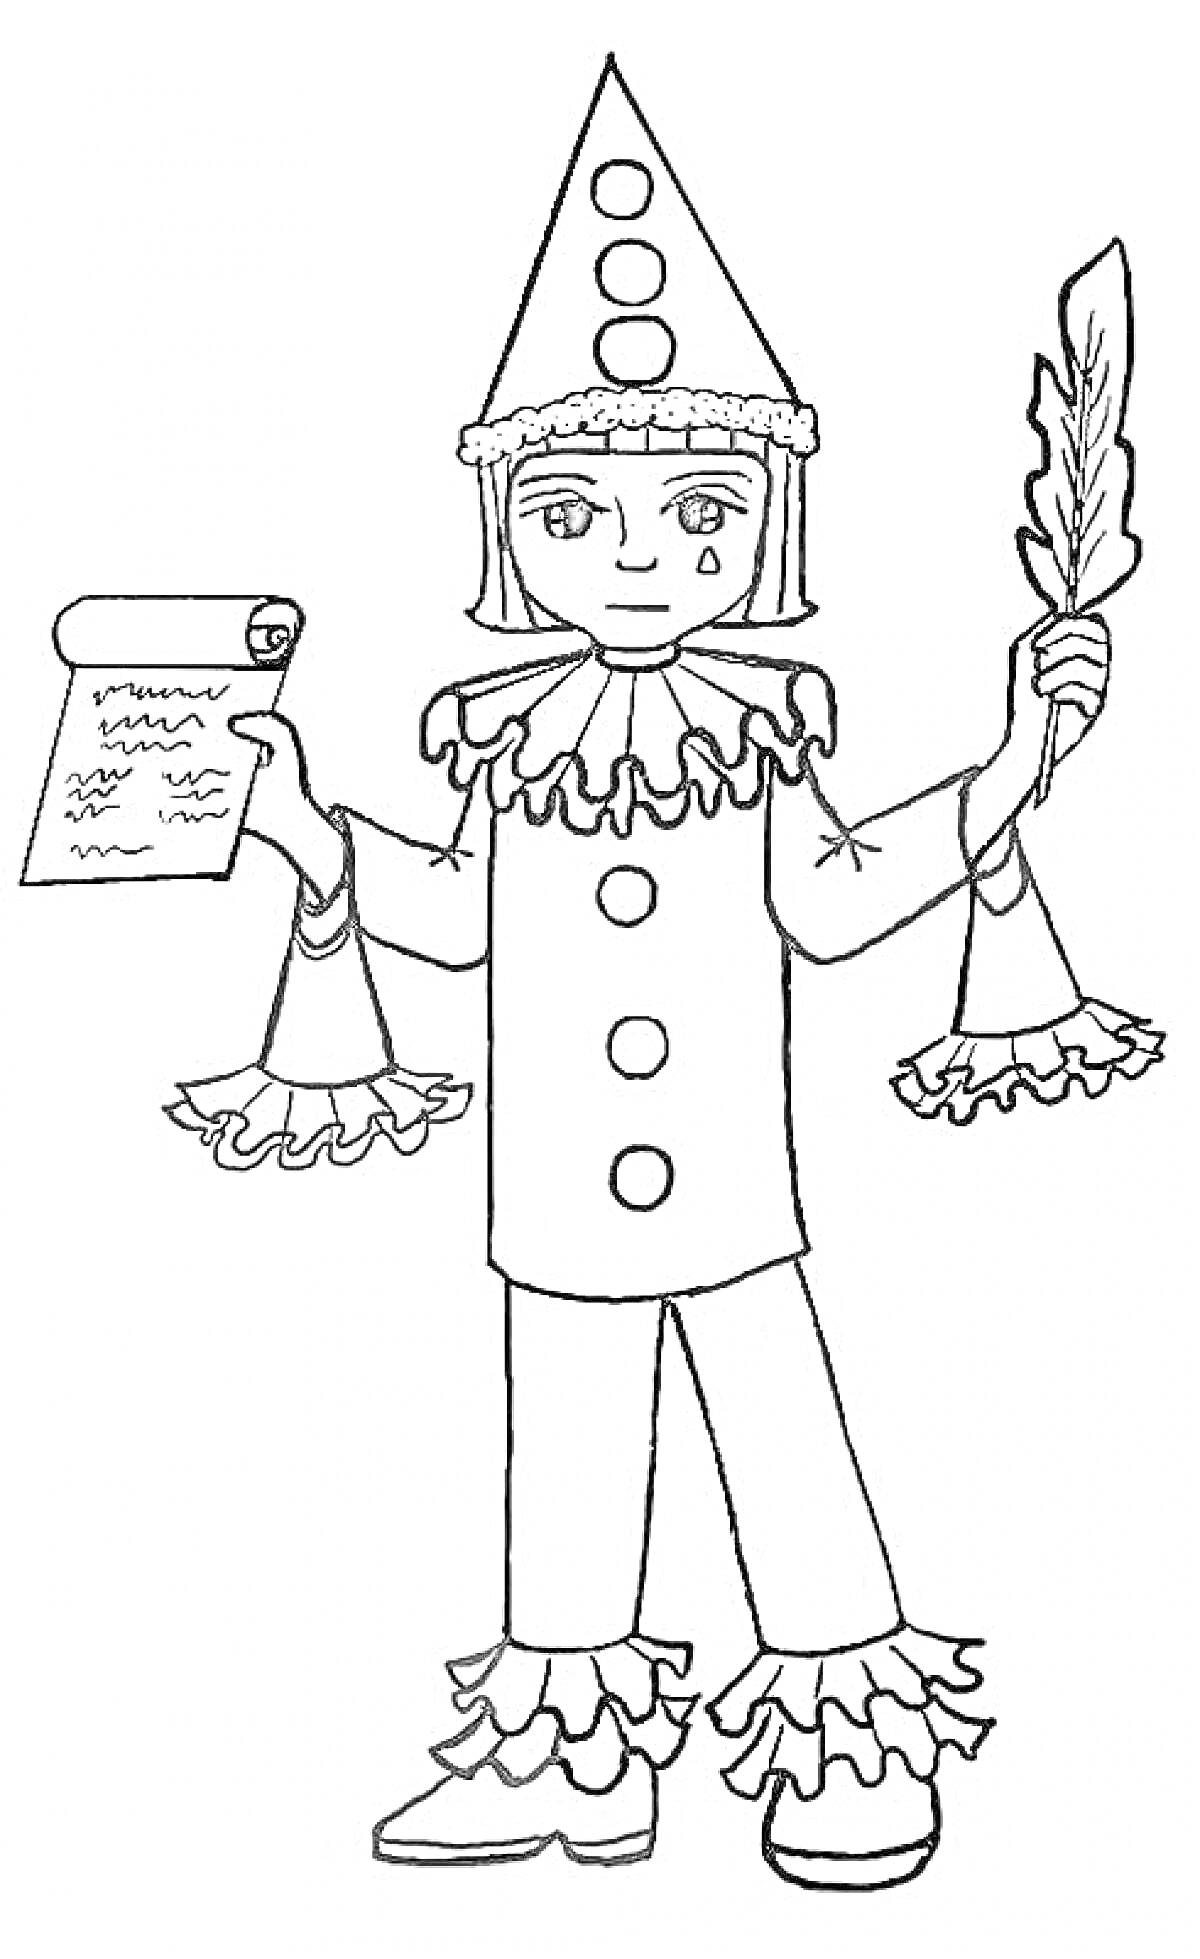 Клоун с бумажным свитком и пером, в костюме с колпаком, сборами и большими пуговицами